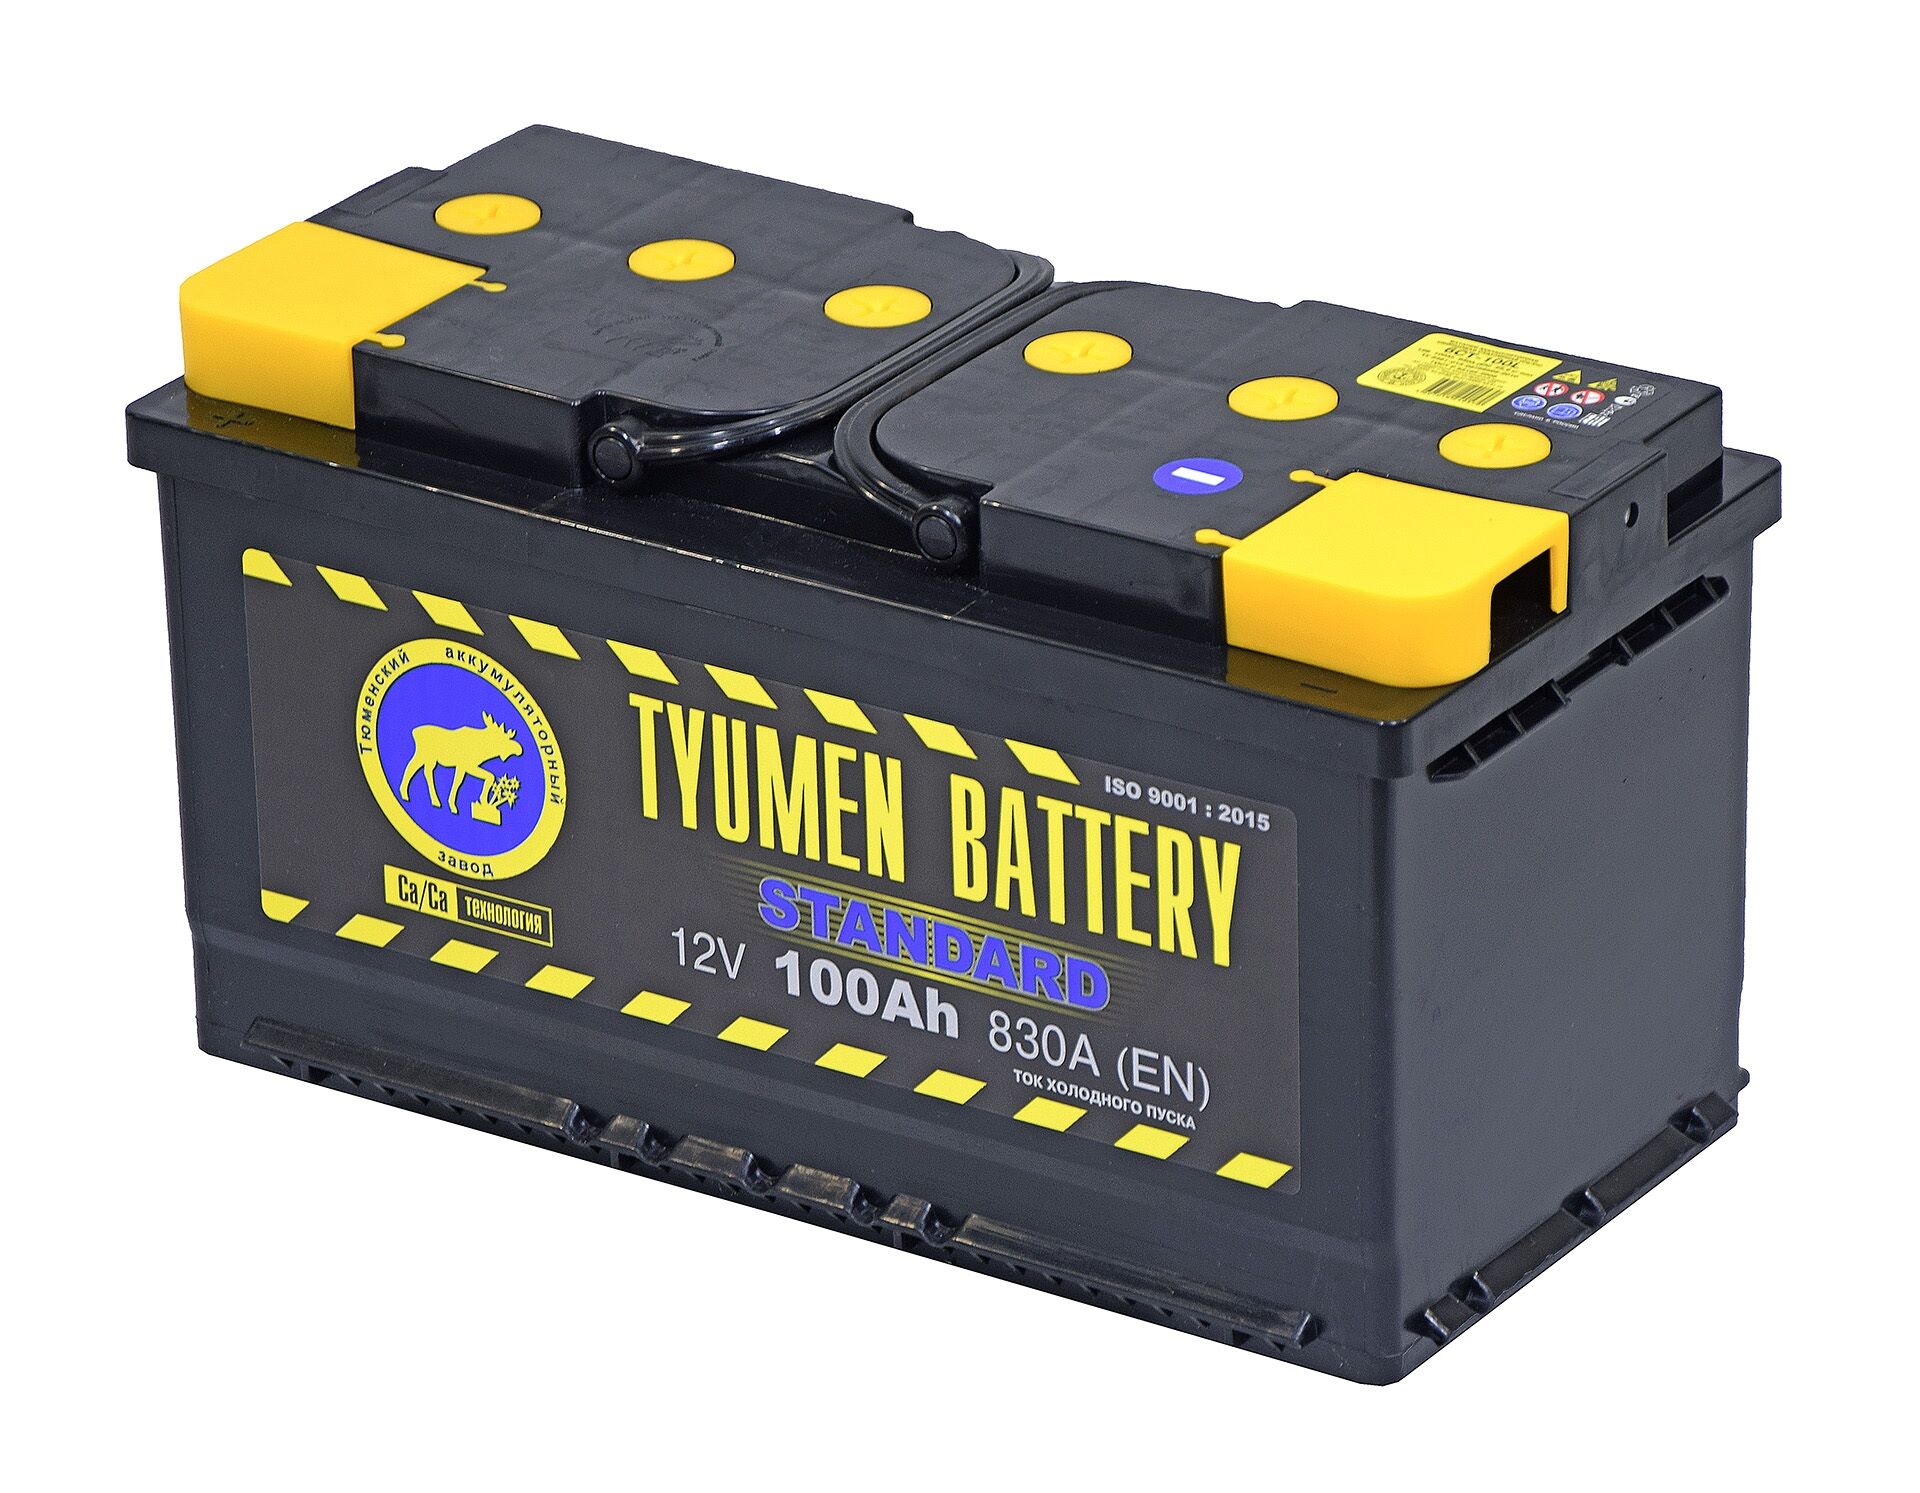 Тюмень АКБ 100ач. Tyumen Battery Standard 190 Ач. Tyumen Battery Standard 100а/ч. Аккумулятор Tyumen Battery Standart 190а/ч. Аккумуляторы автомобильные 100 ач